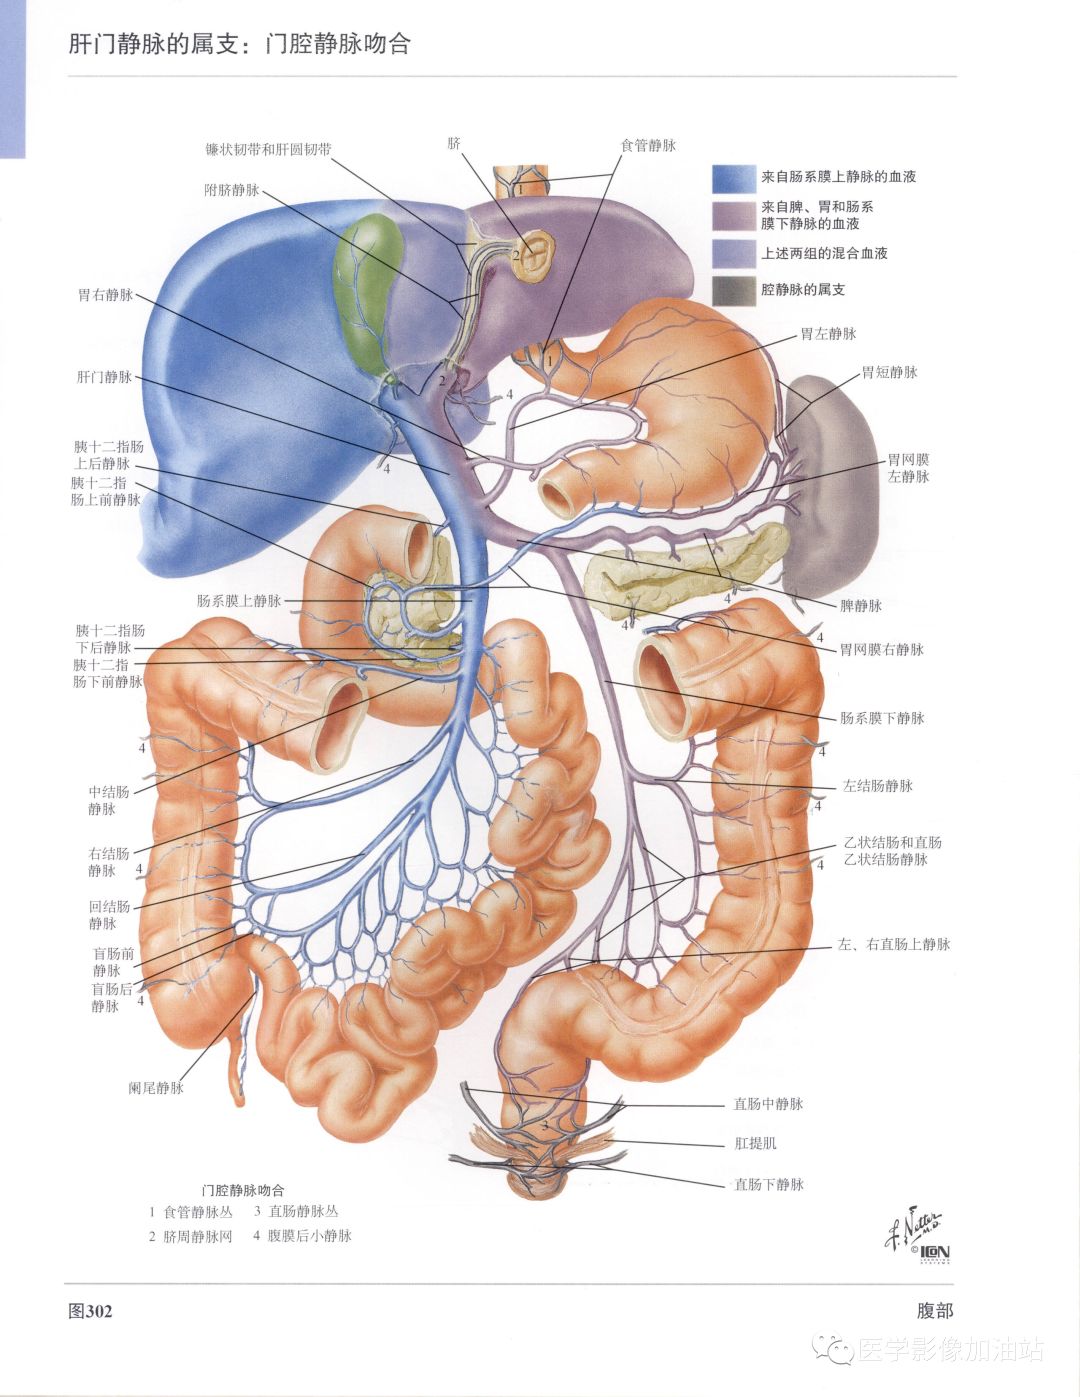 图7-19 第一肝门横断面表现-腹部外科临床解剖学-医学